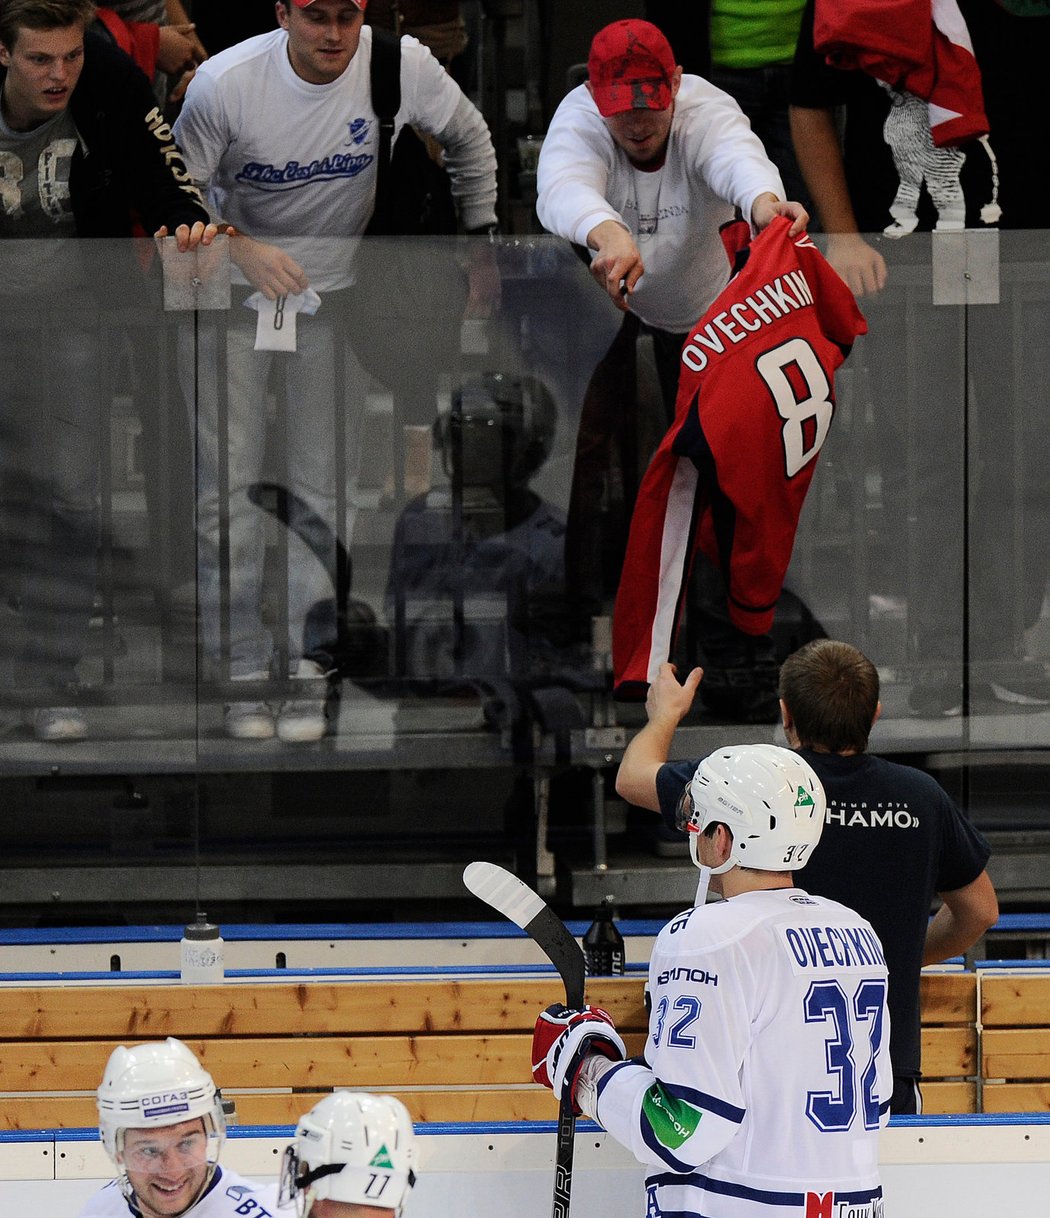 Ruský útočník Alexandr Ovečkin byl hvězdou zápasu KHL. Jediným gólem rozhodl o výhře Dynama Moskva nad pražským Lvem. Po zápase podepsal jednomu z fanoušků dres Washingtonu.